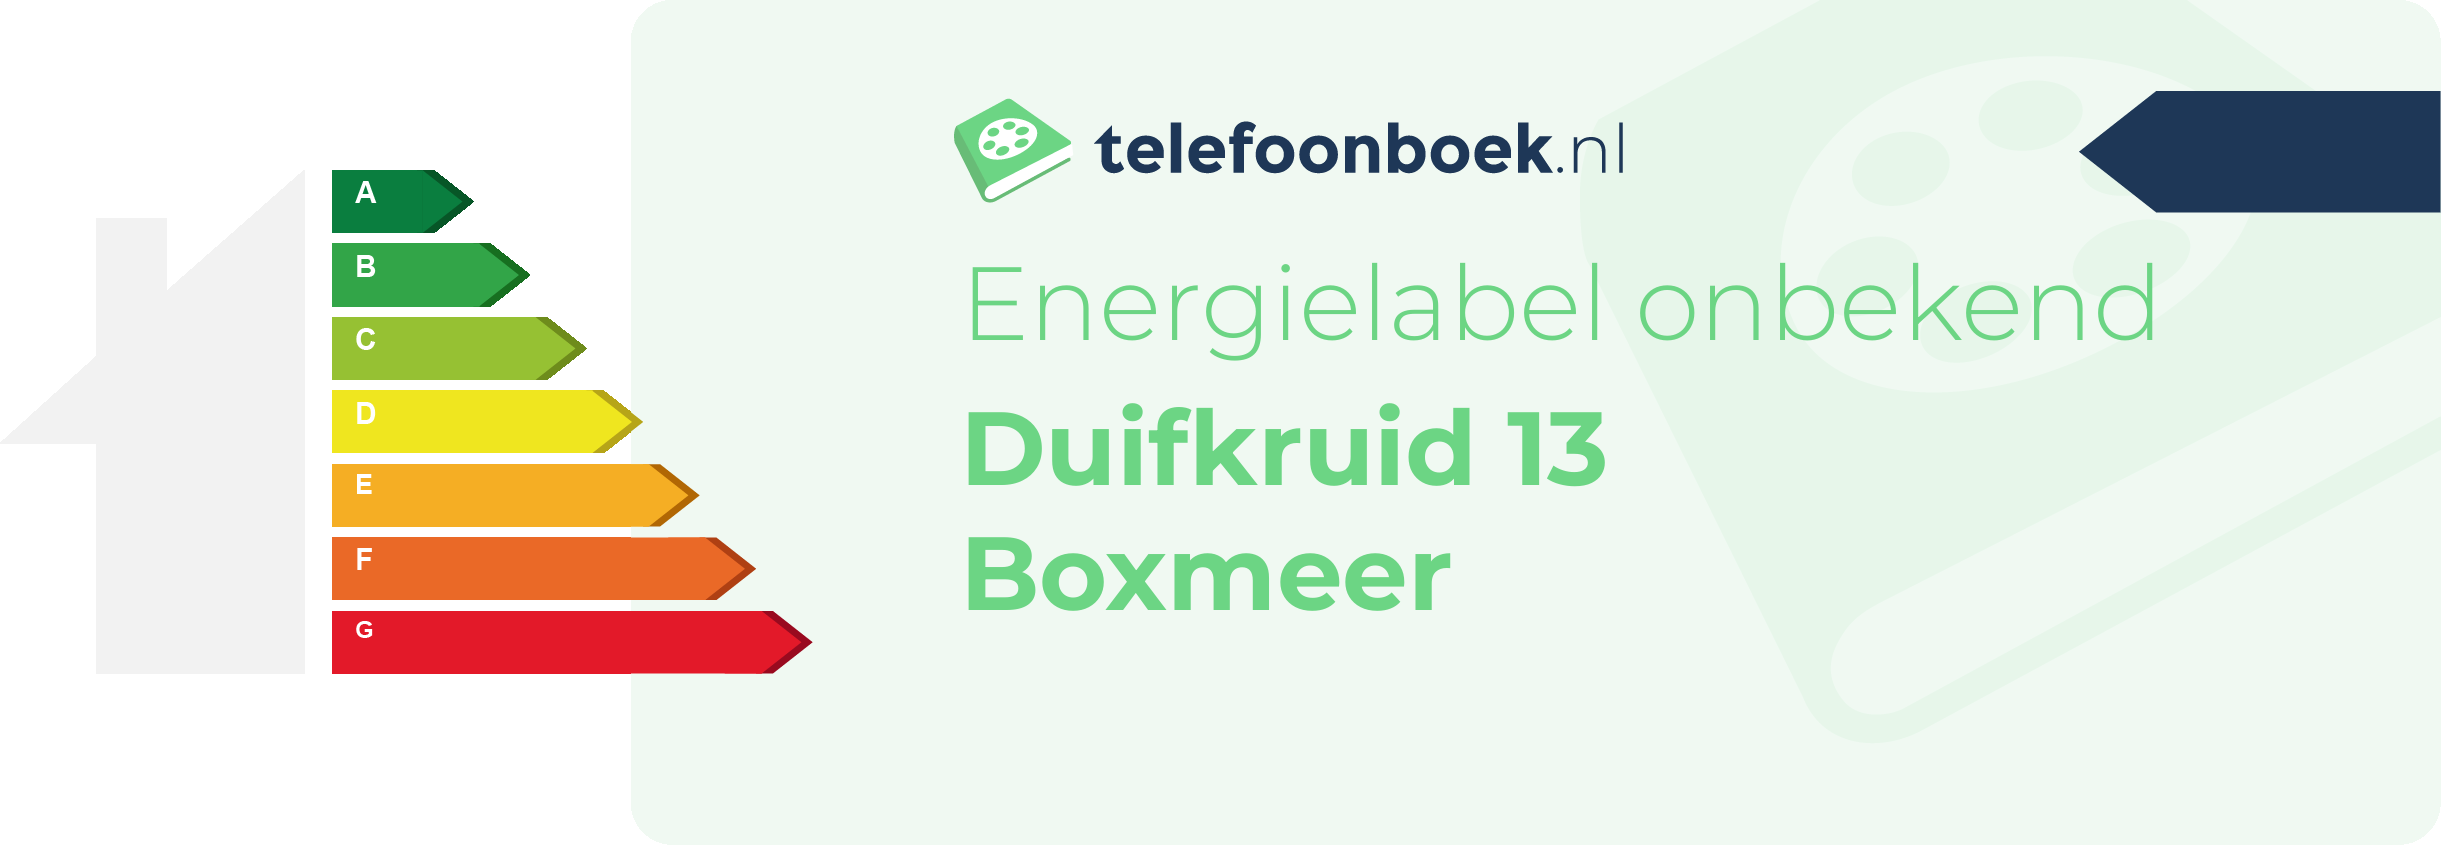 Energielabel Duifkruid 13 Boxmeer